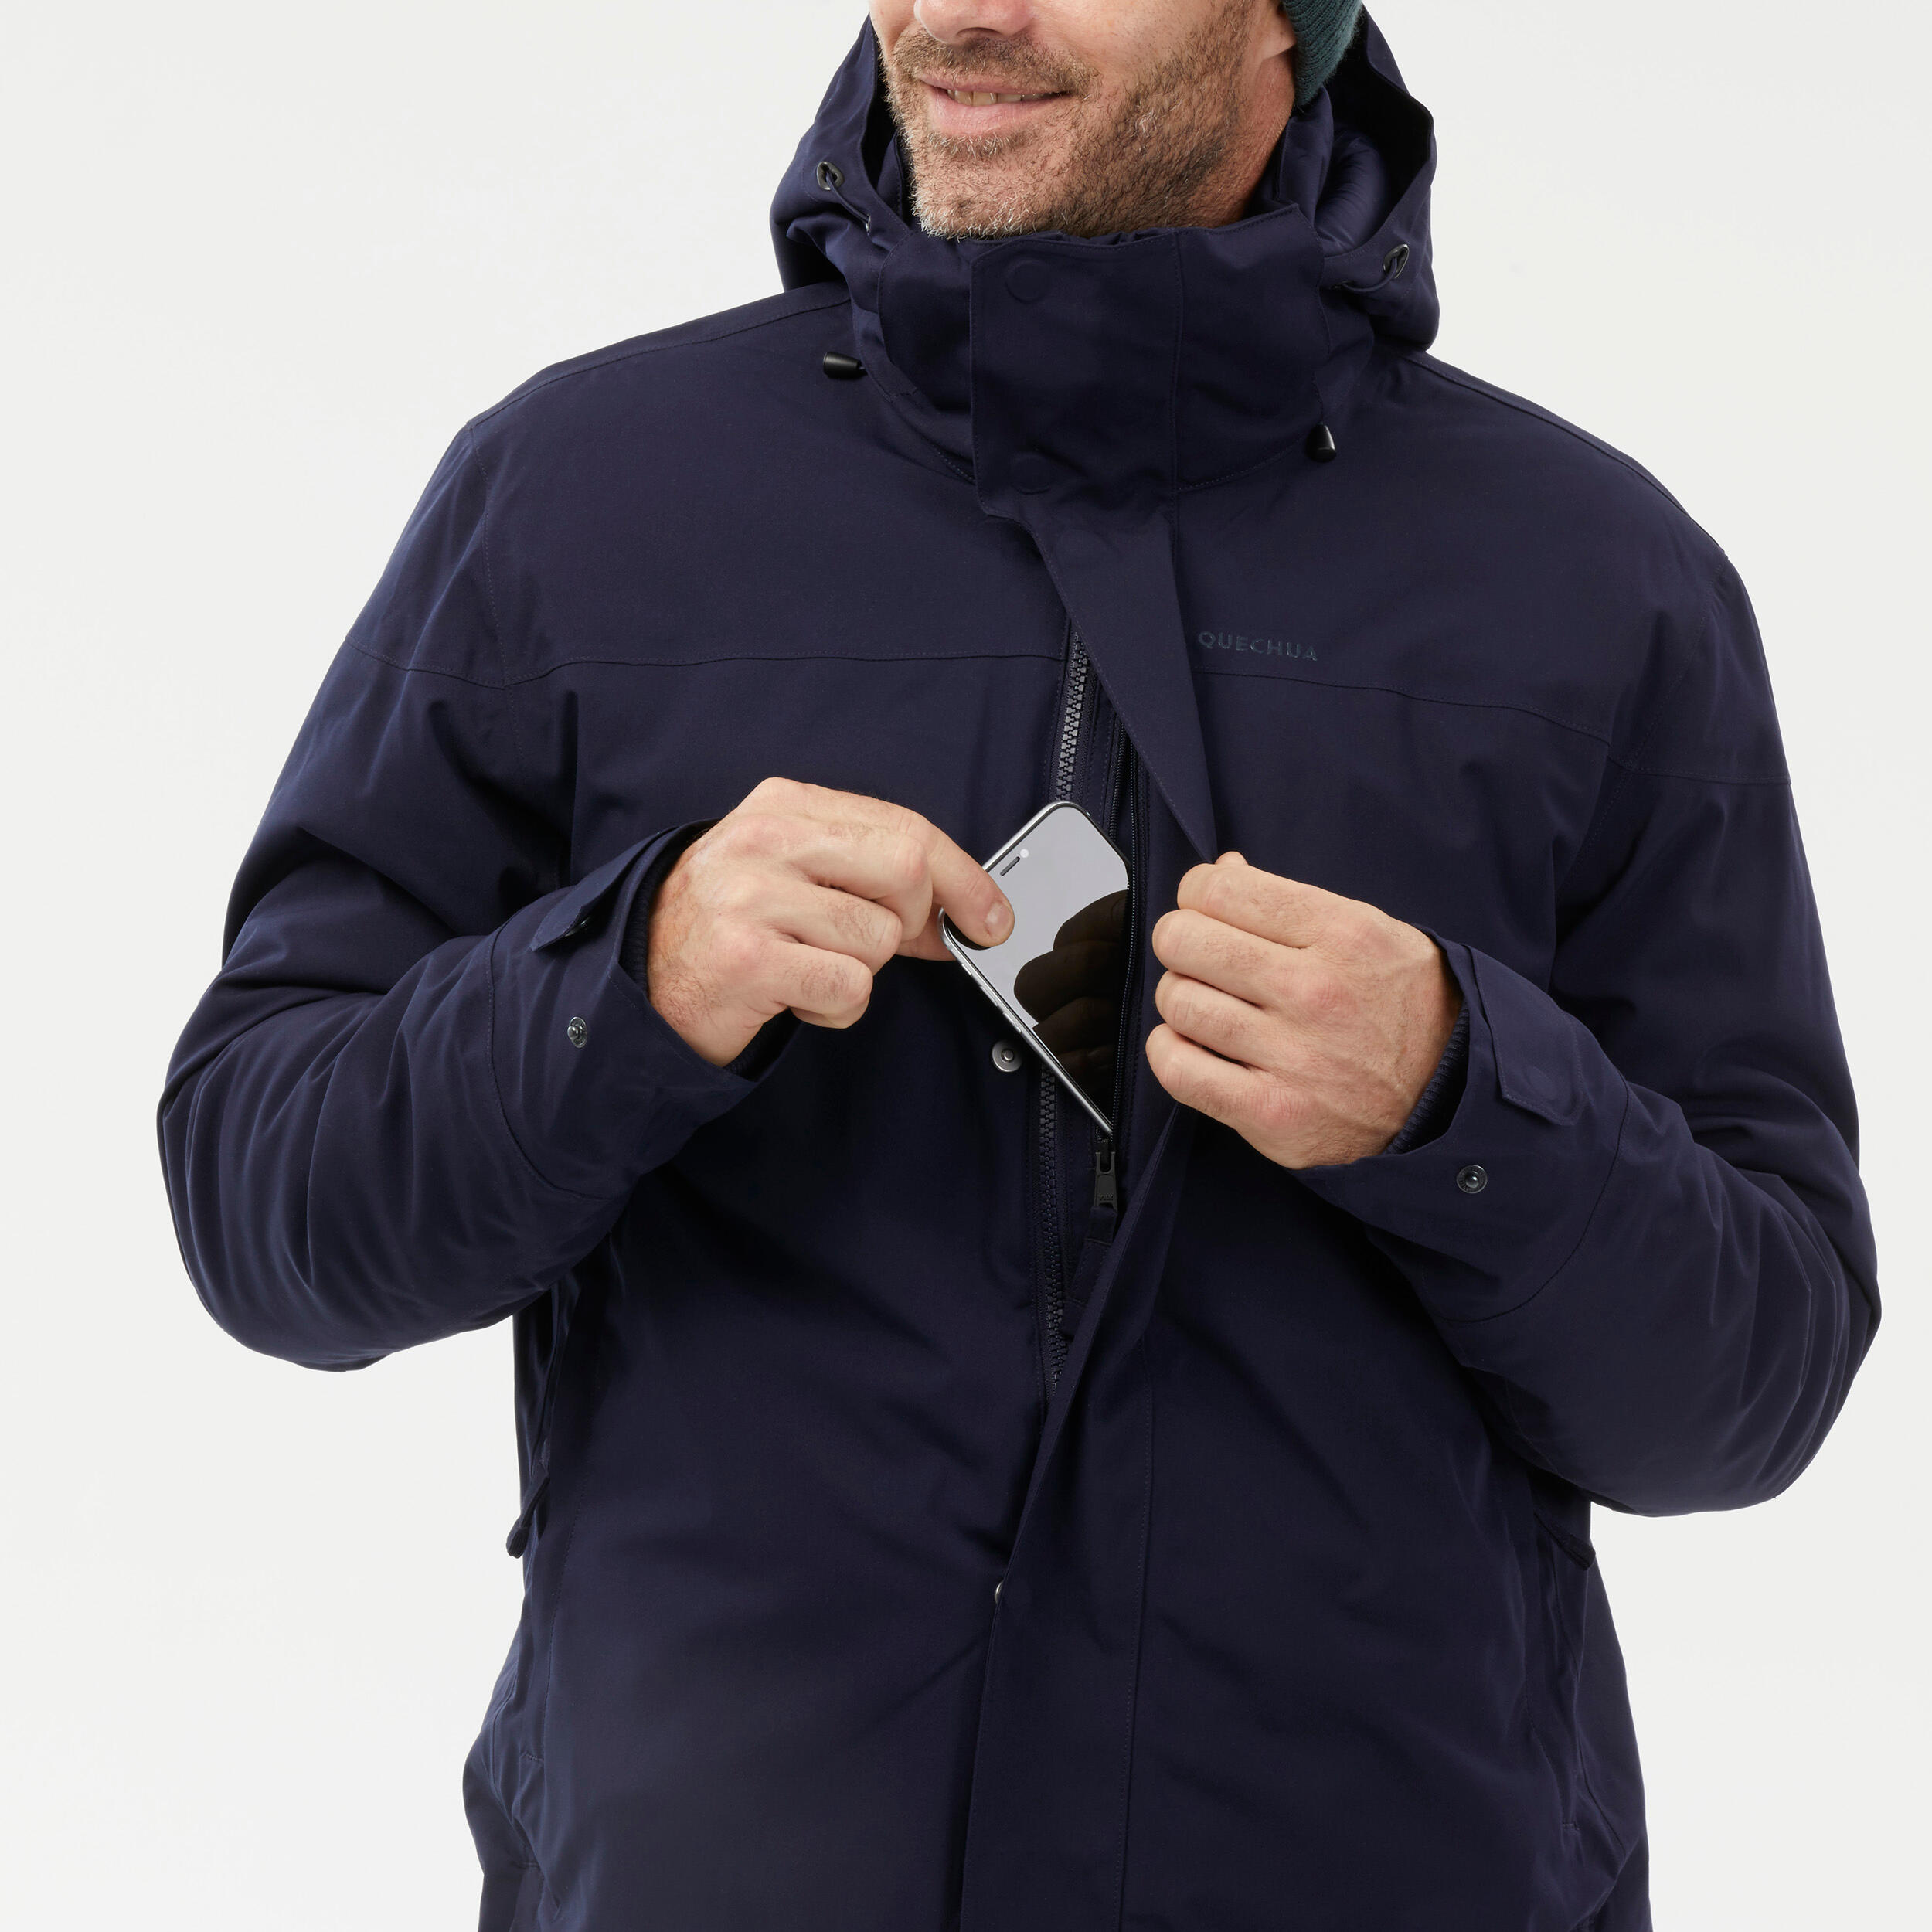 Men's Waterproof Winter Jacket - SH 500 Blue - Asphalt blue - Quechua -  Decathlon